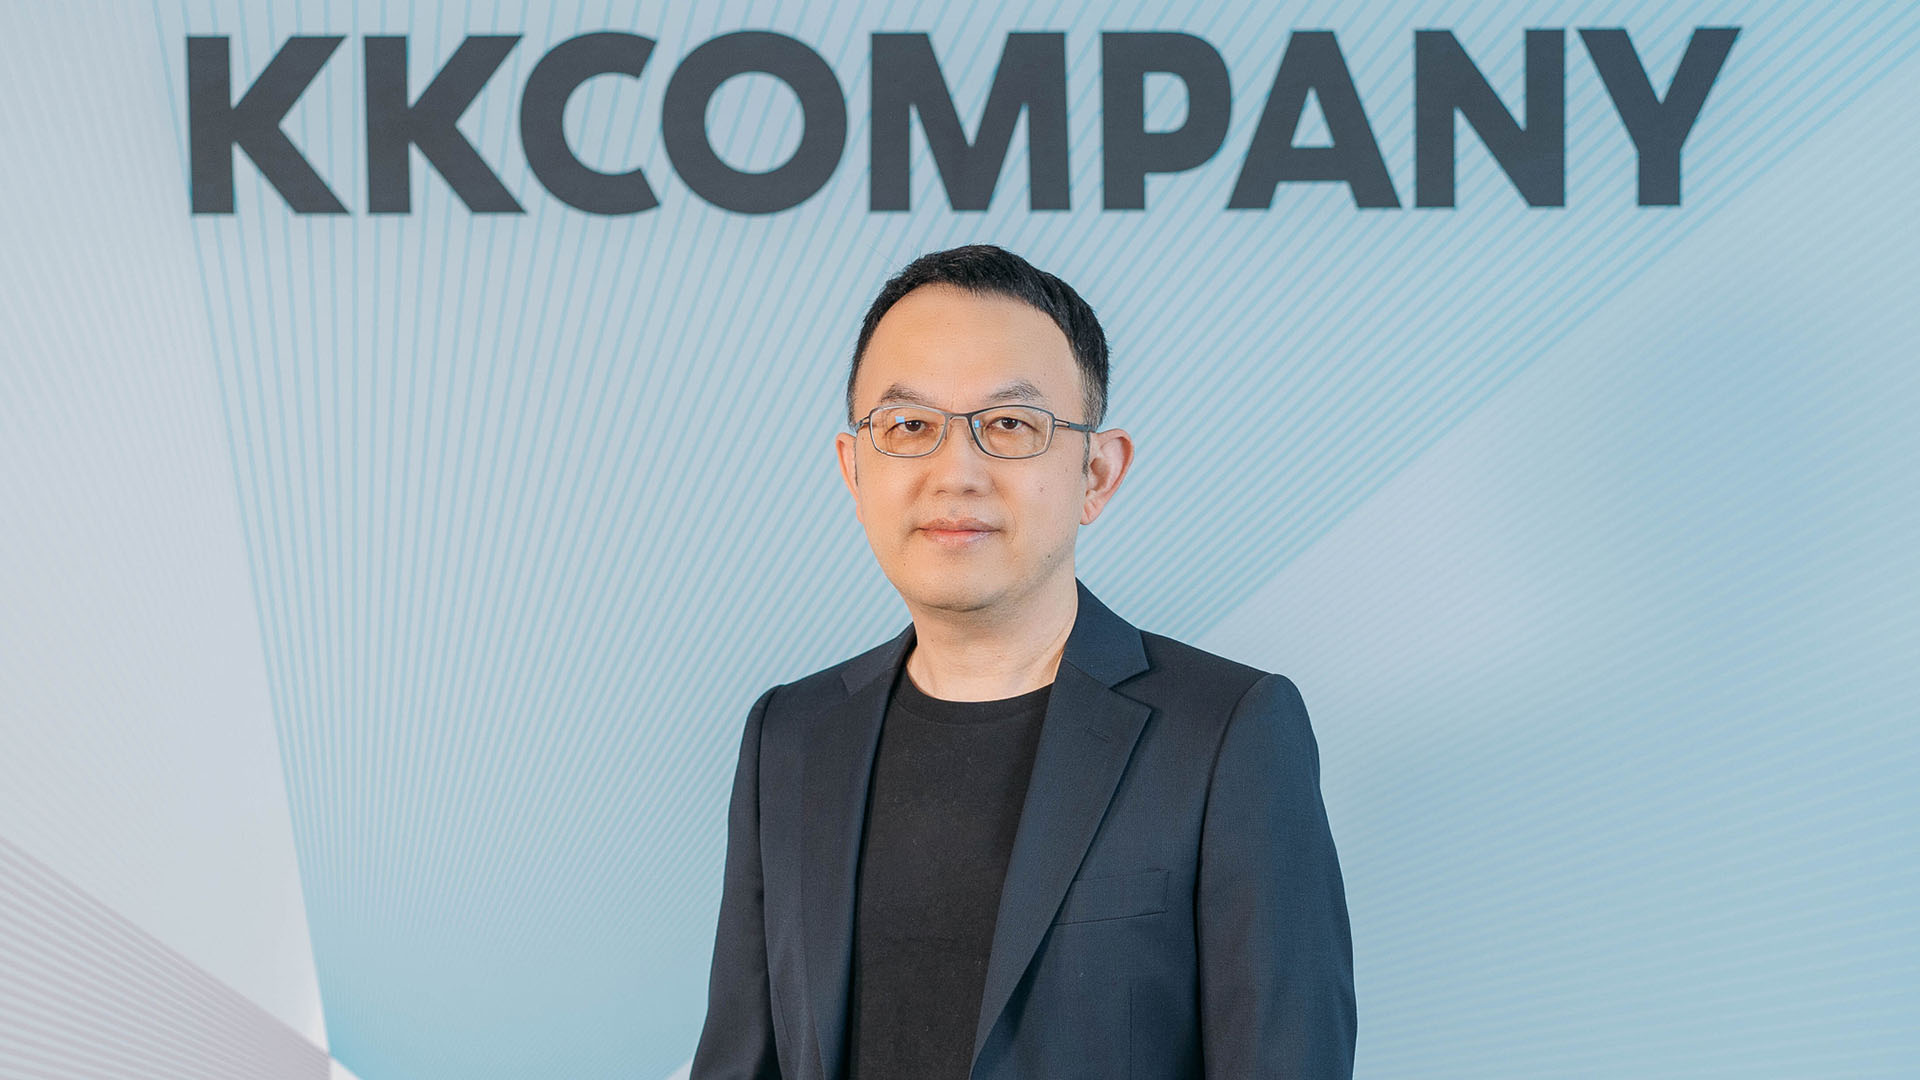 【新聞素材二】kkcompany Technologies 集團由王献堂（steve Wang）擔任集團董事長暨執行長，領導策略布局、營運與業務發展。